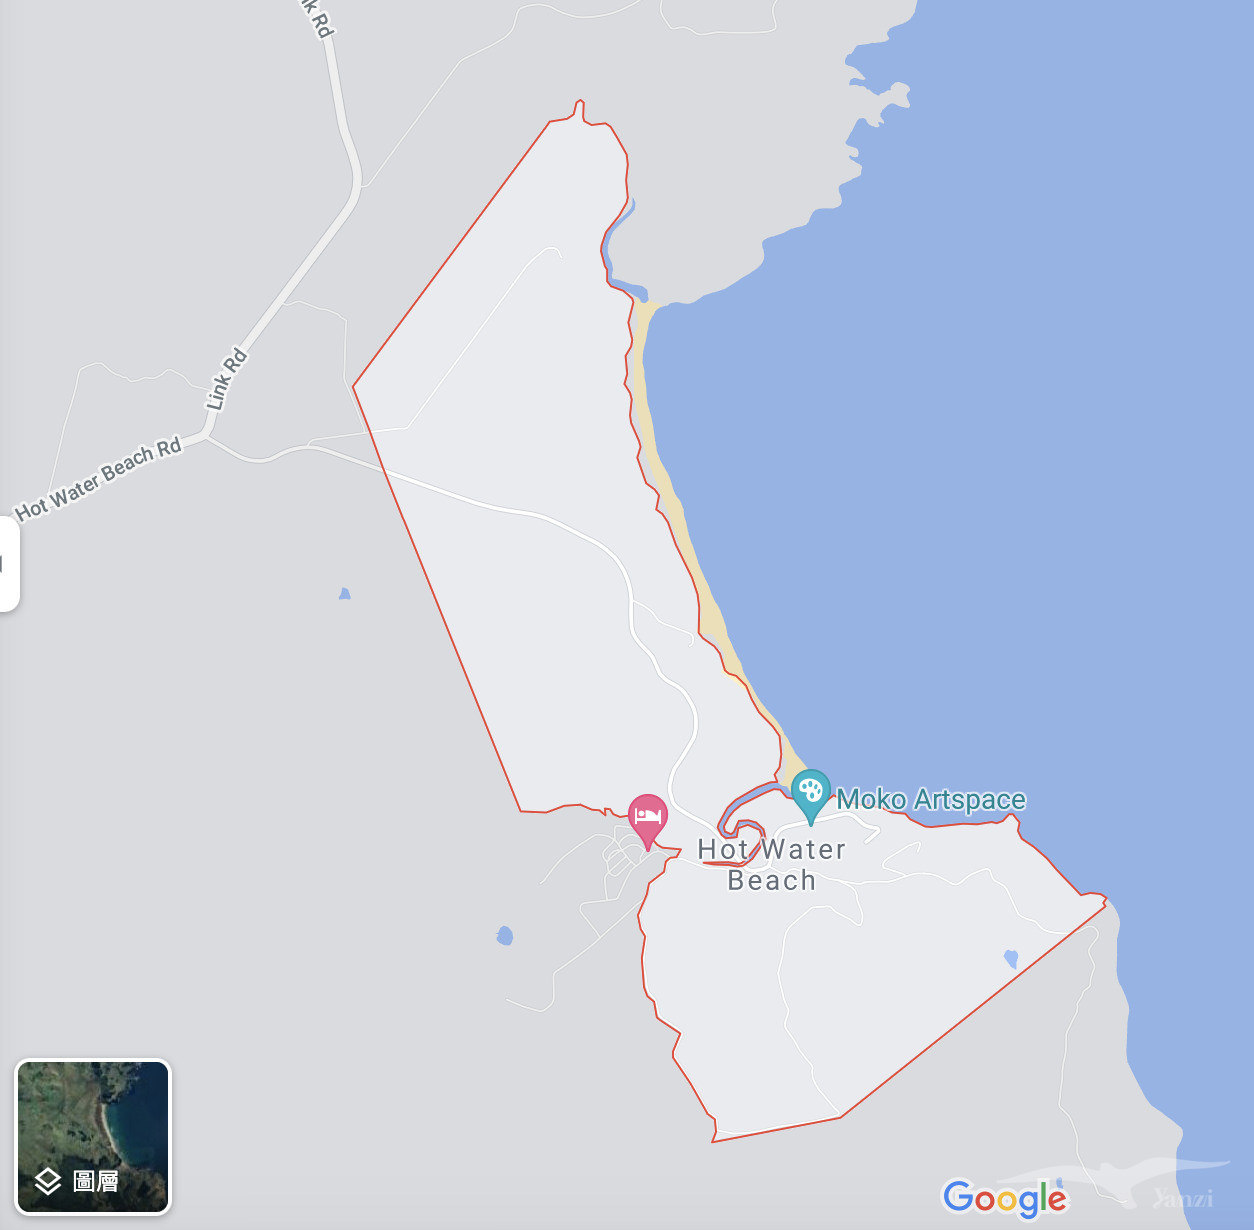 紐西蘭北島 熱水沙灘範圍地圖hot water beach map